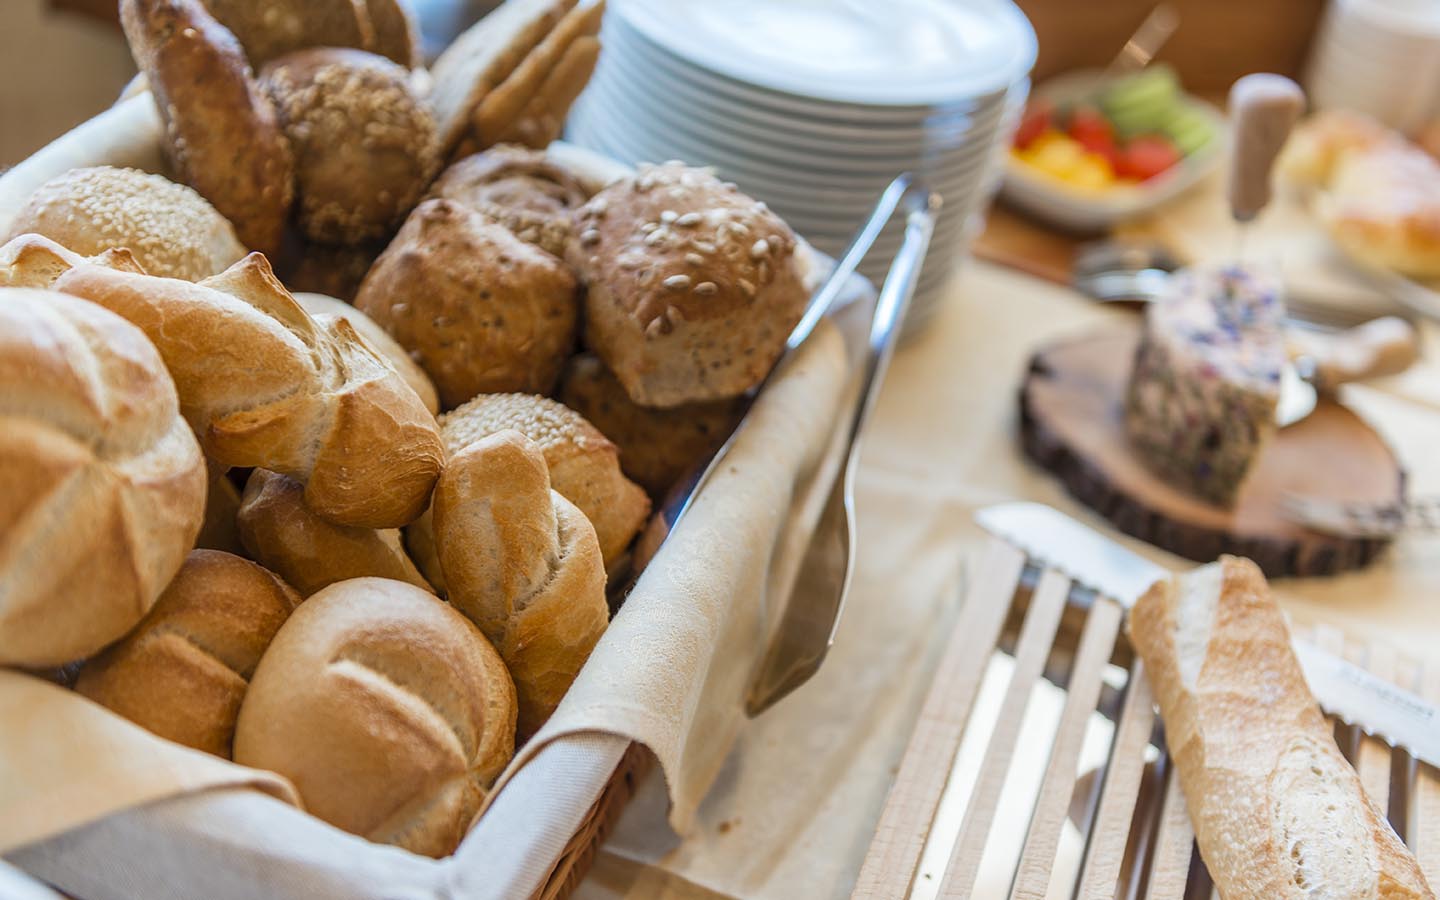 Breakfastbuffet - Breakfast rolls - Bread